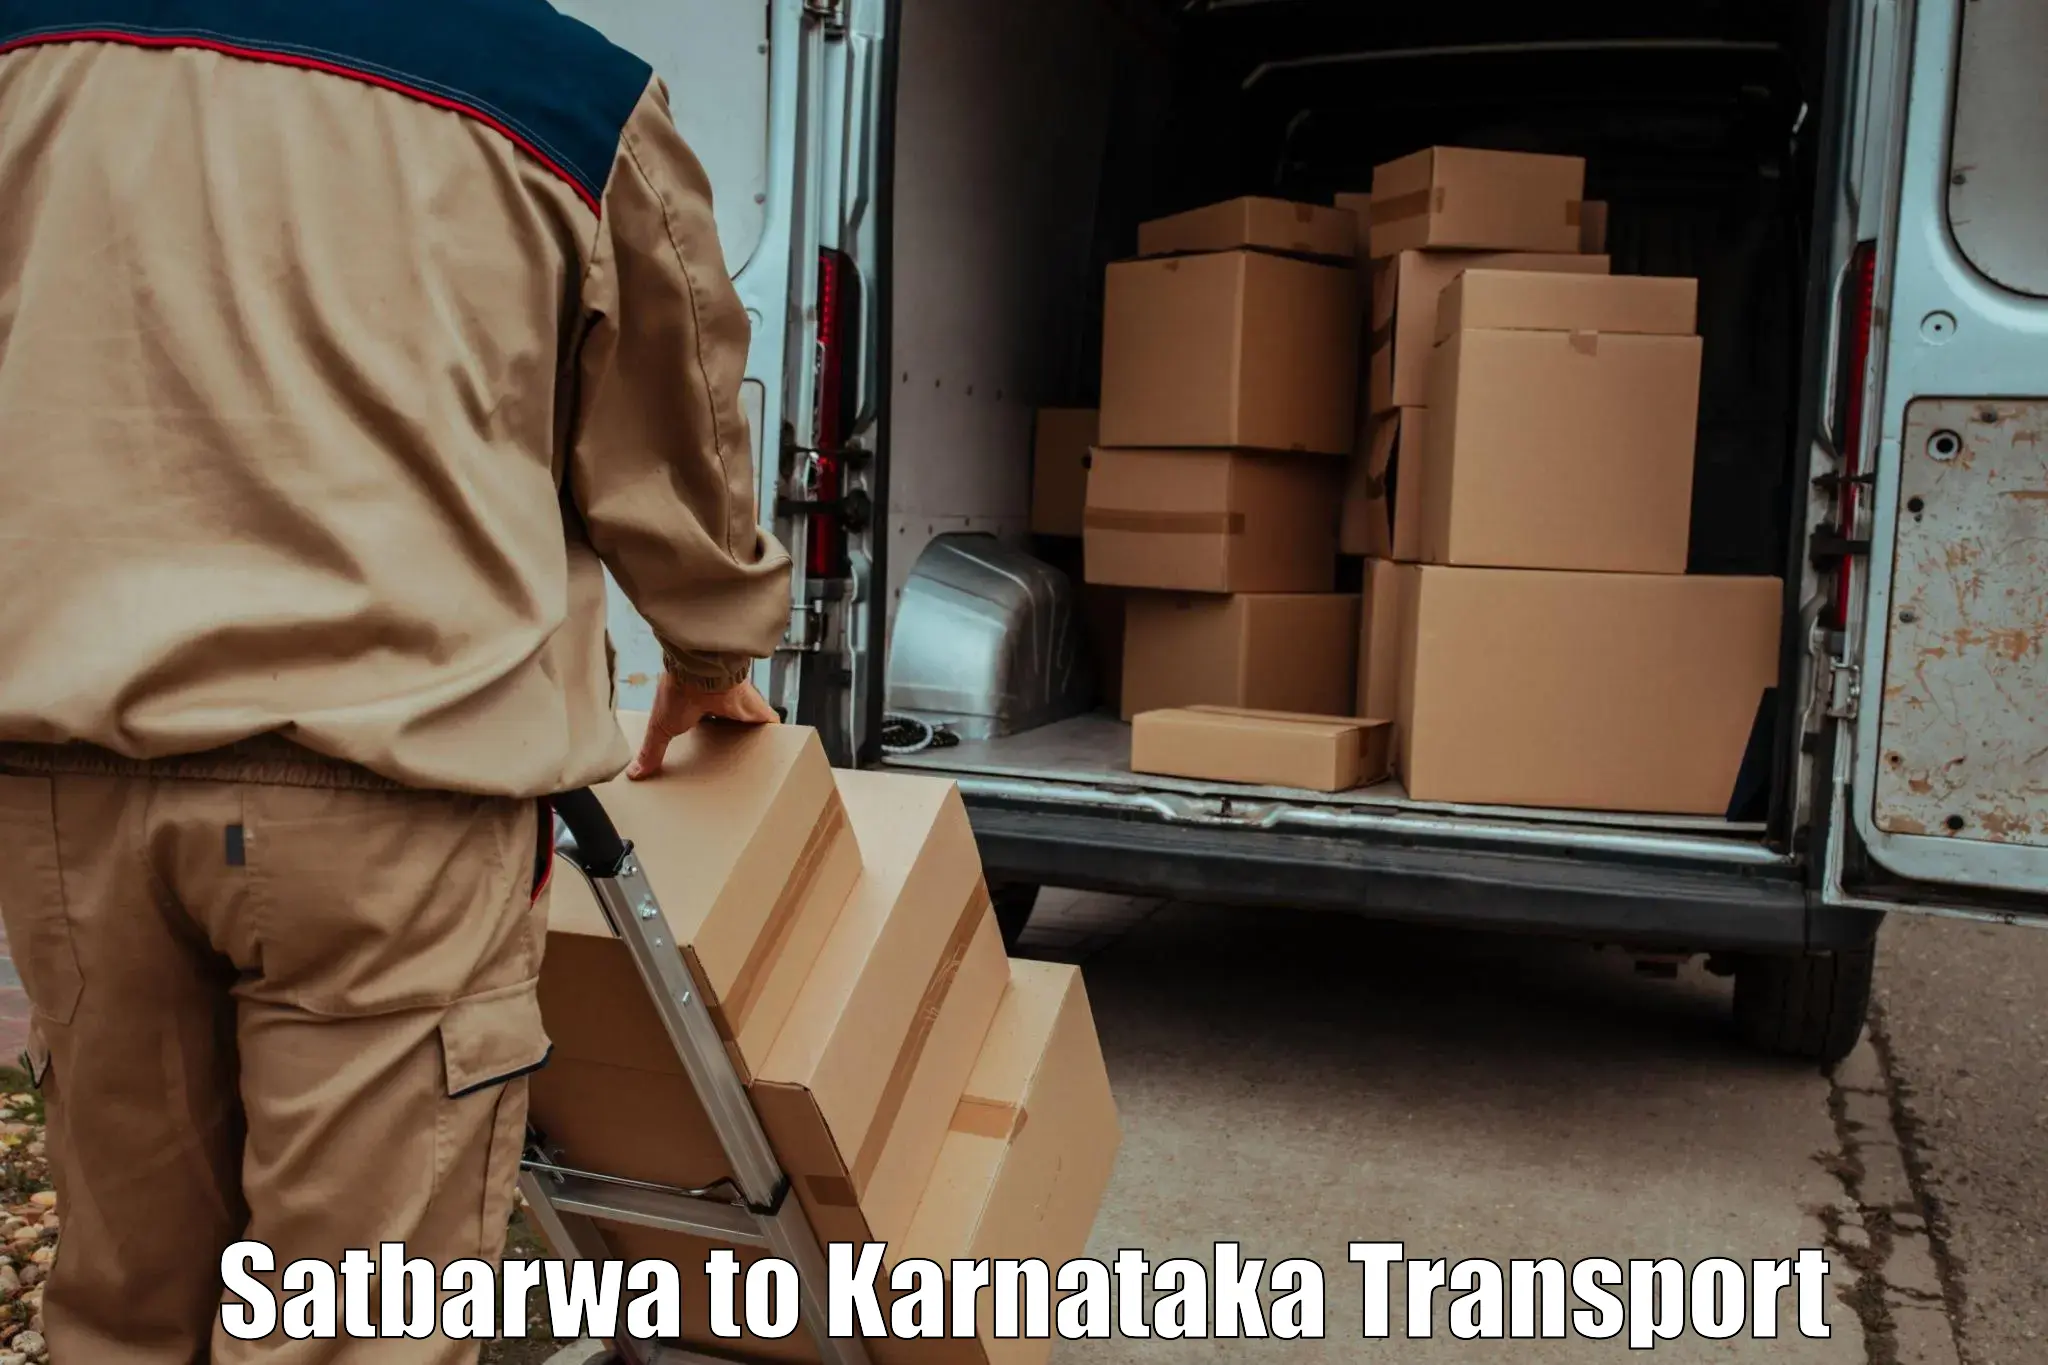 Bike transfer Satbarwa to Kanakapura